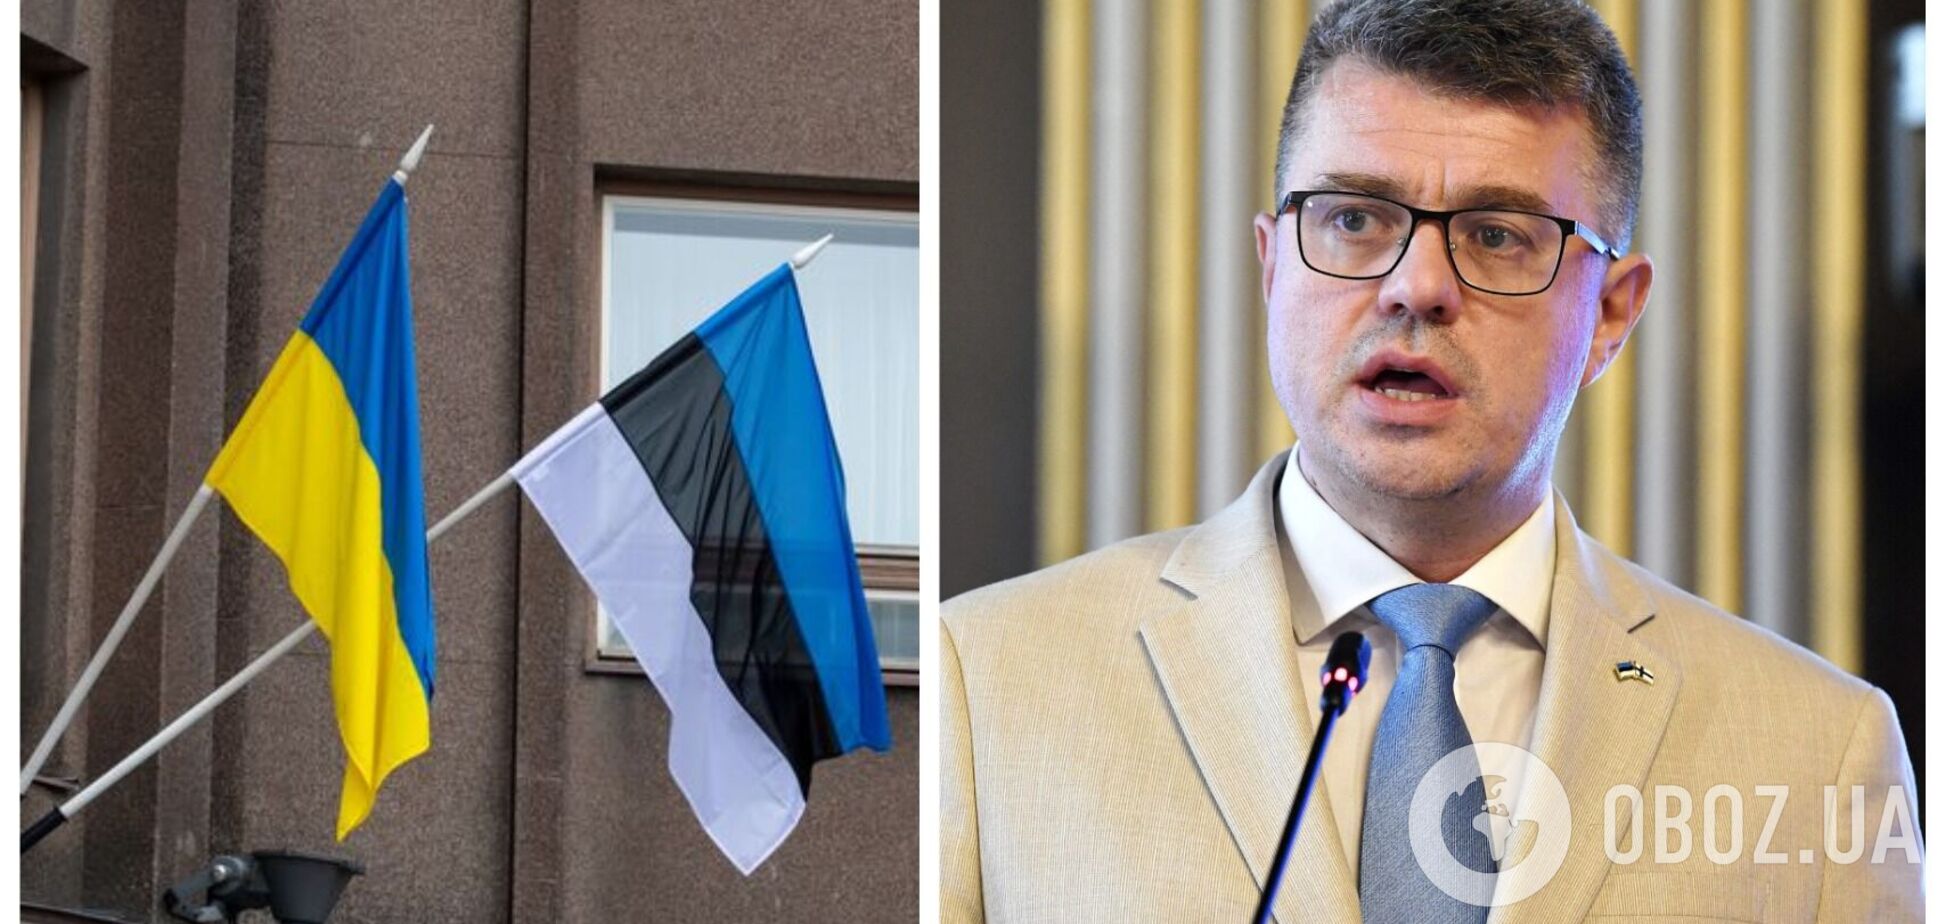 Глава МИД Эстонии призвал усилить поддержку Украины: политика умиротворения РФ привела к геноцидному типу войны